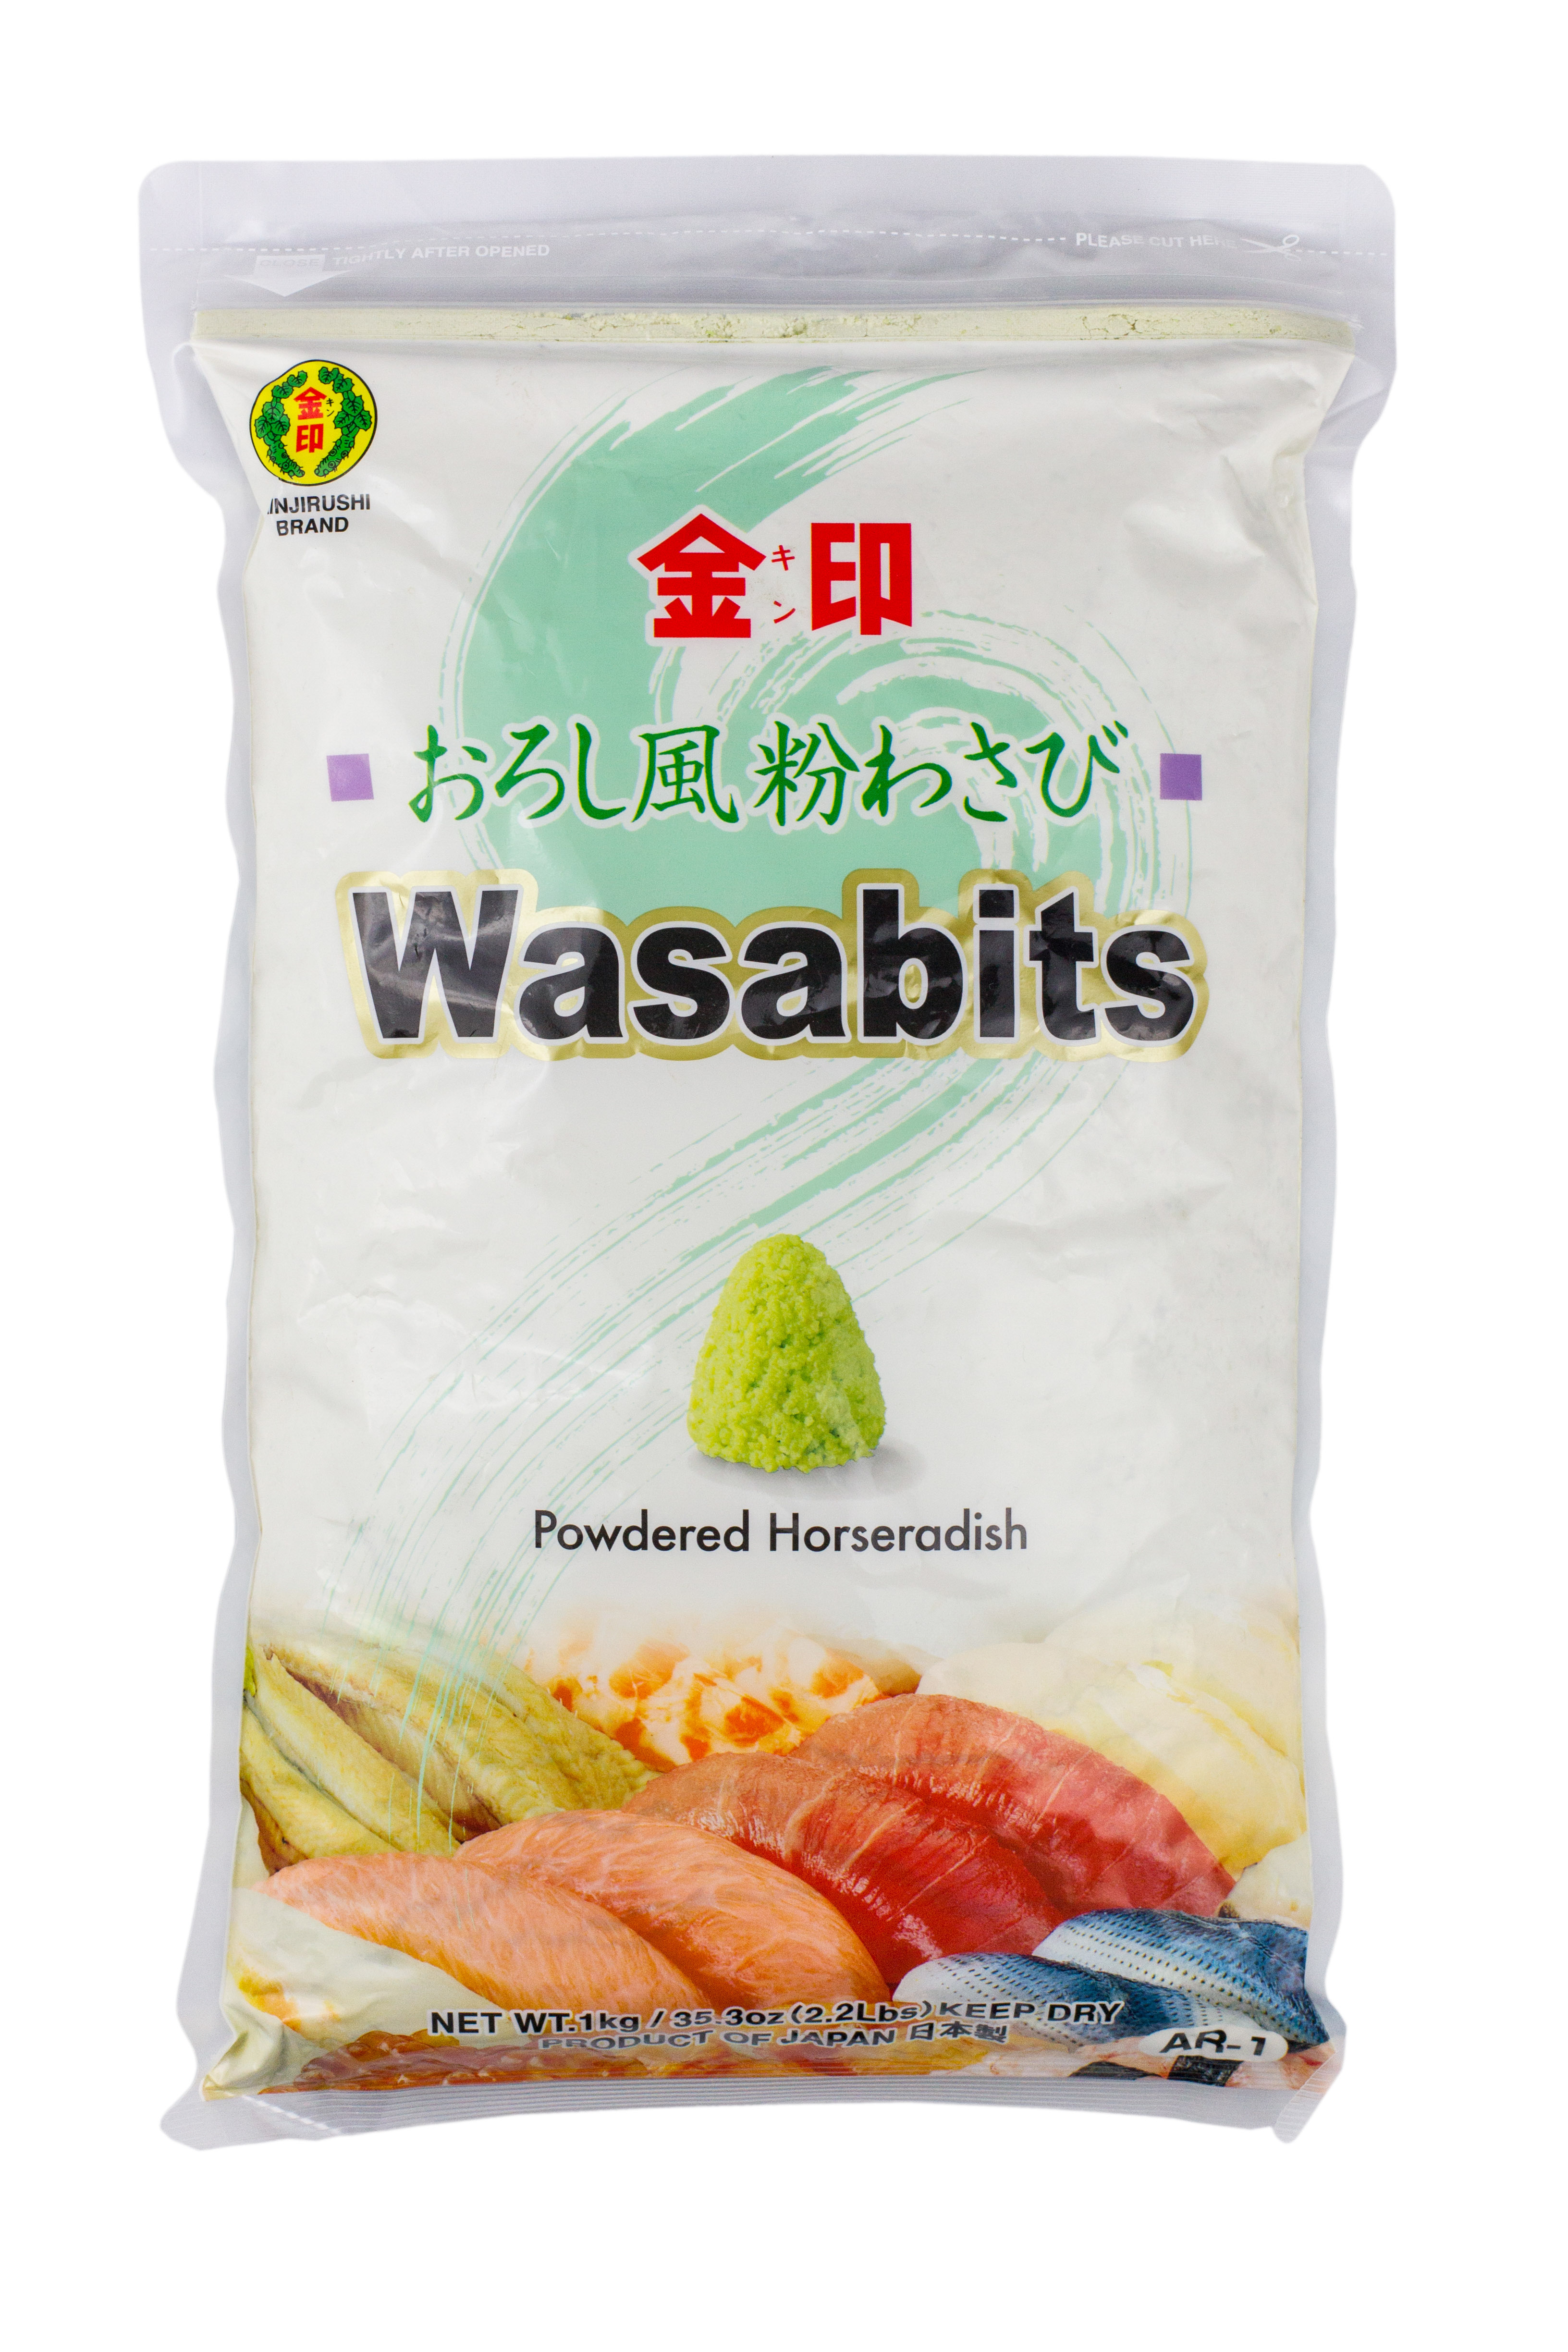 Pudra wasabi super premium Kona Wasabi Wasabits, brandul Kinjirushi, 1 kg